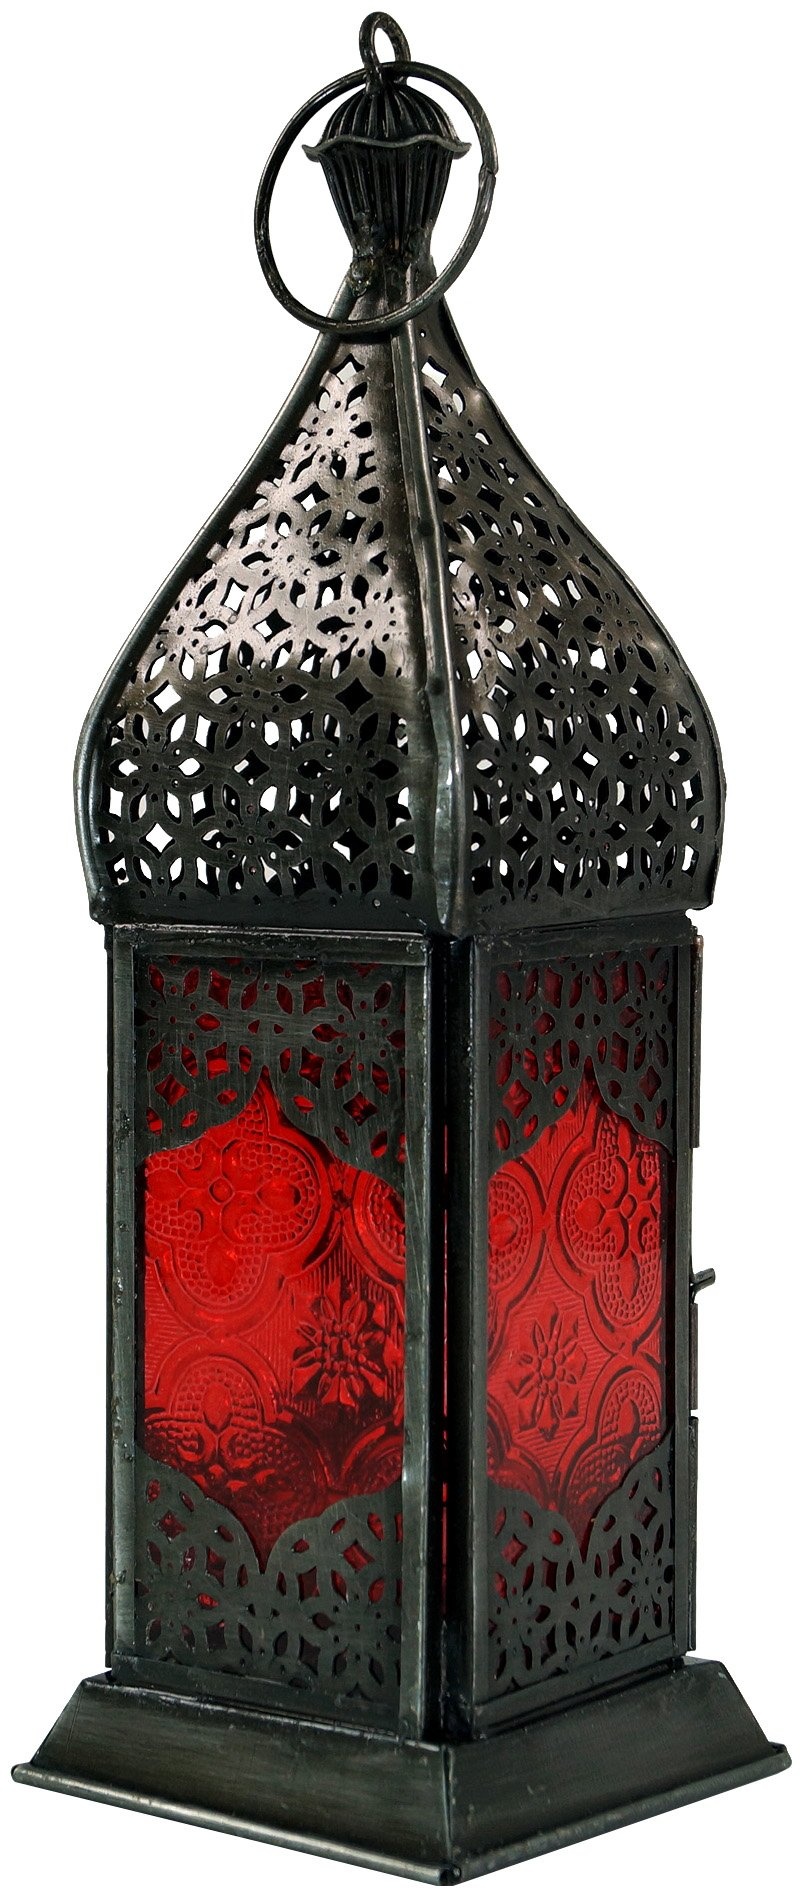 GURU SHOP Orientalische Metall/Glas Laterne in Marrokanischem Design, Windlicht, Rot, Farbe: Rot, 23x7,5x7,5 cm, Orientalische Laternen